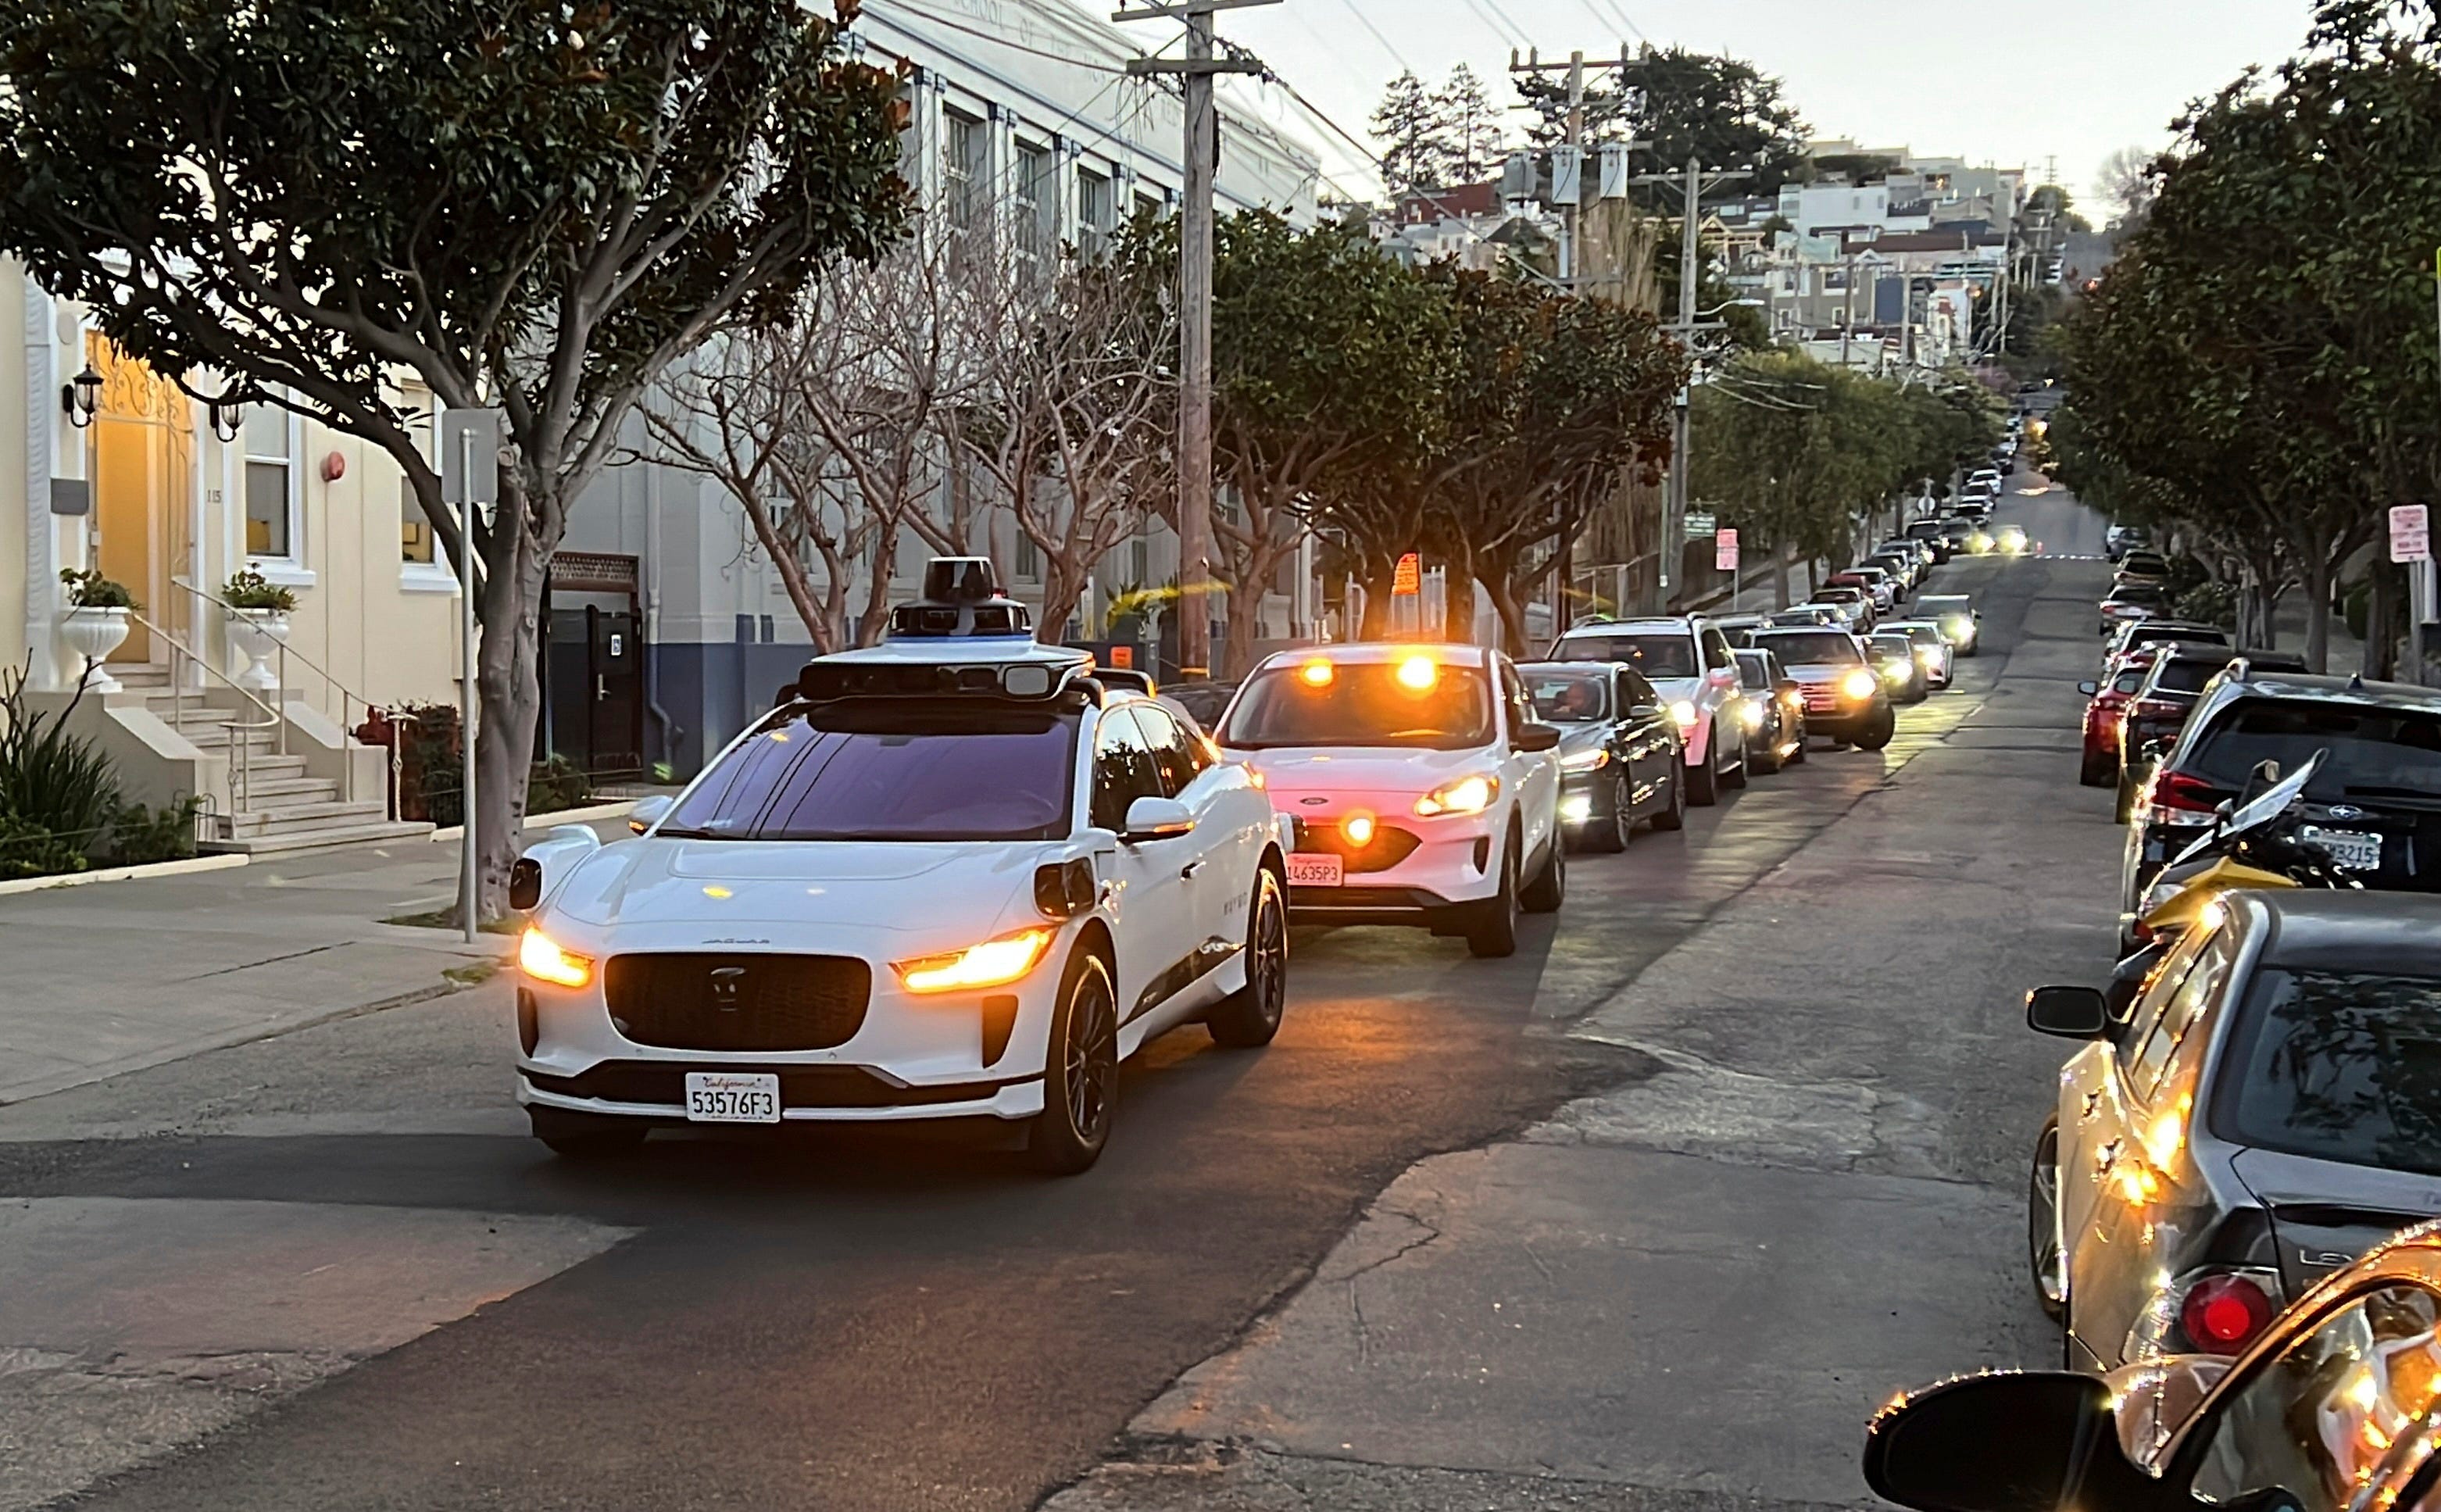 ایک سفید کار شہر کی سڑک پر گاڑیوں کی ایک قطار کو اپنے پیچھے انتظار کر رہی ہے۔ یہ ایک Waymo سیلف ڈرائیونگ ٹیکسی ہے۔